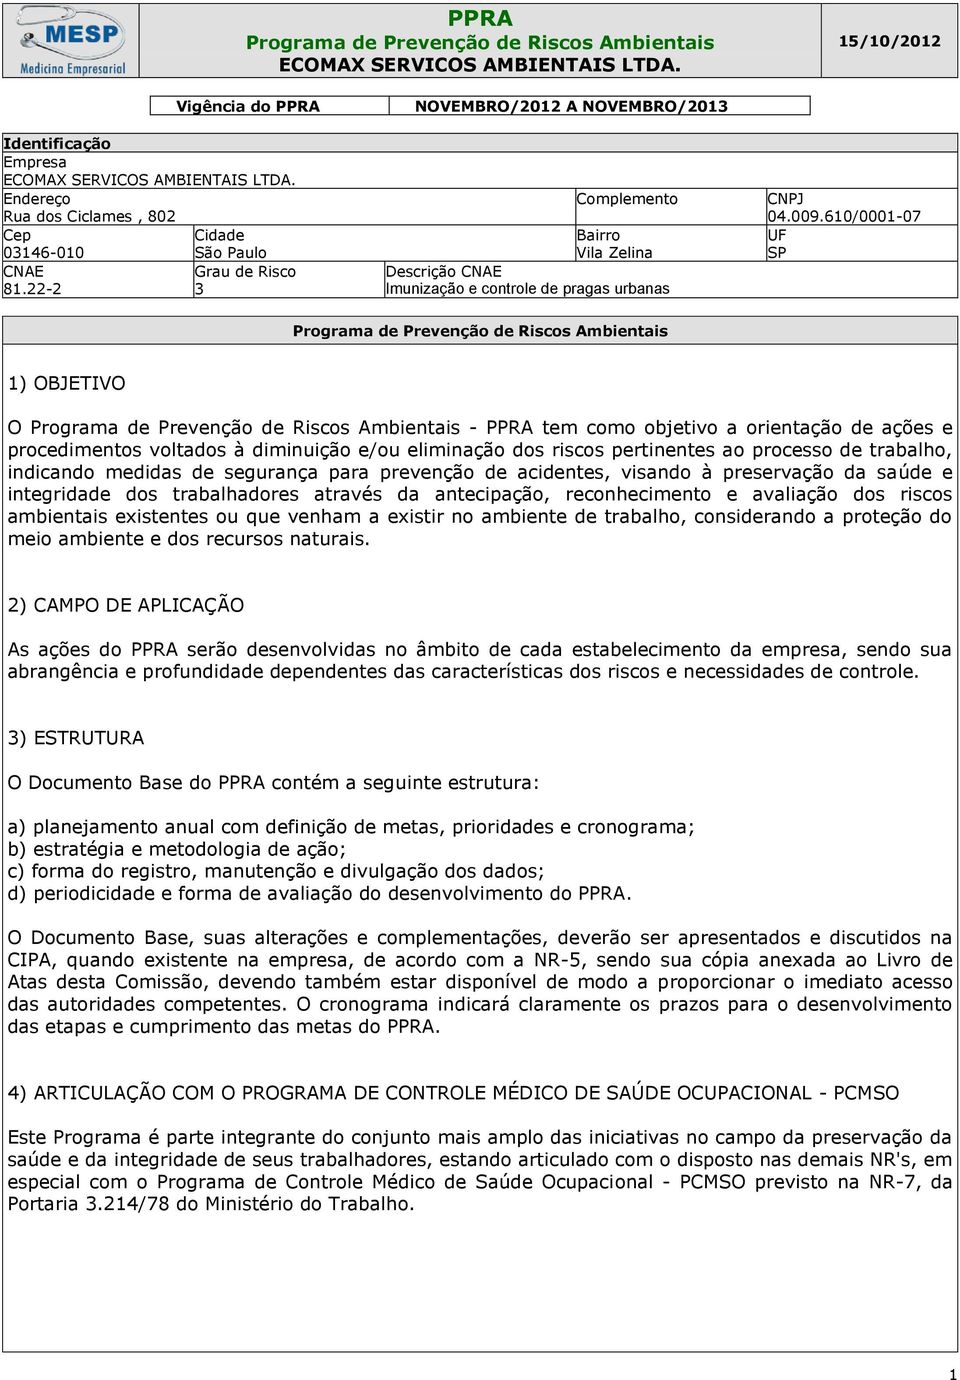 22-2 Grau de Risco 3 NOVEMBRO/2012 A NOVEMBRO/20 Complemento Bairro Vila Zelina Descrição CNAE Imunização e controle de pragas urbanas CNPJ 04.009.